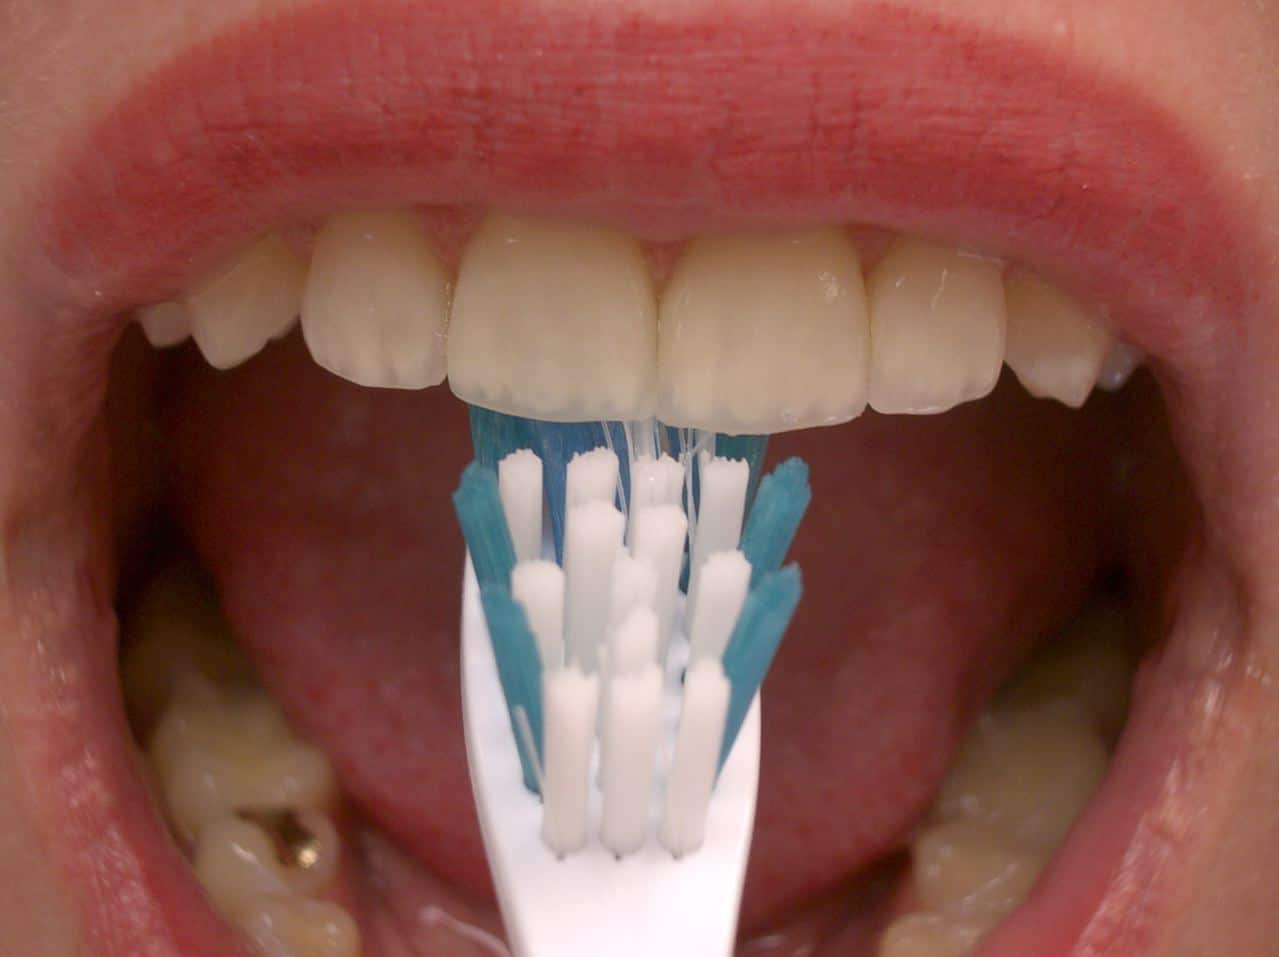 imgpsh fullsize anim 3 - Oral Hygiene